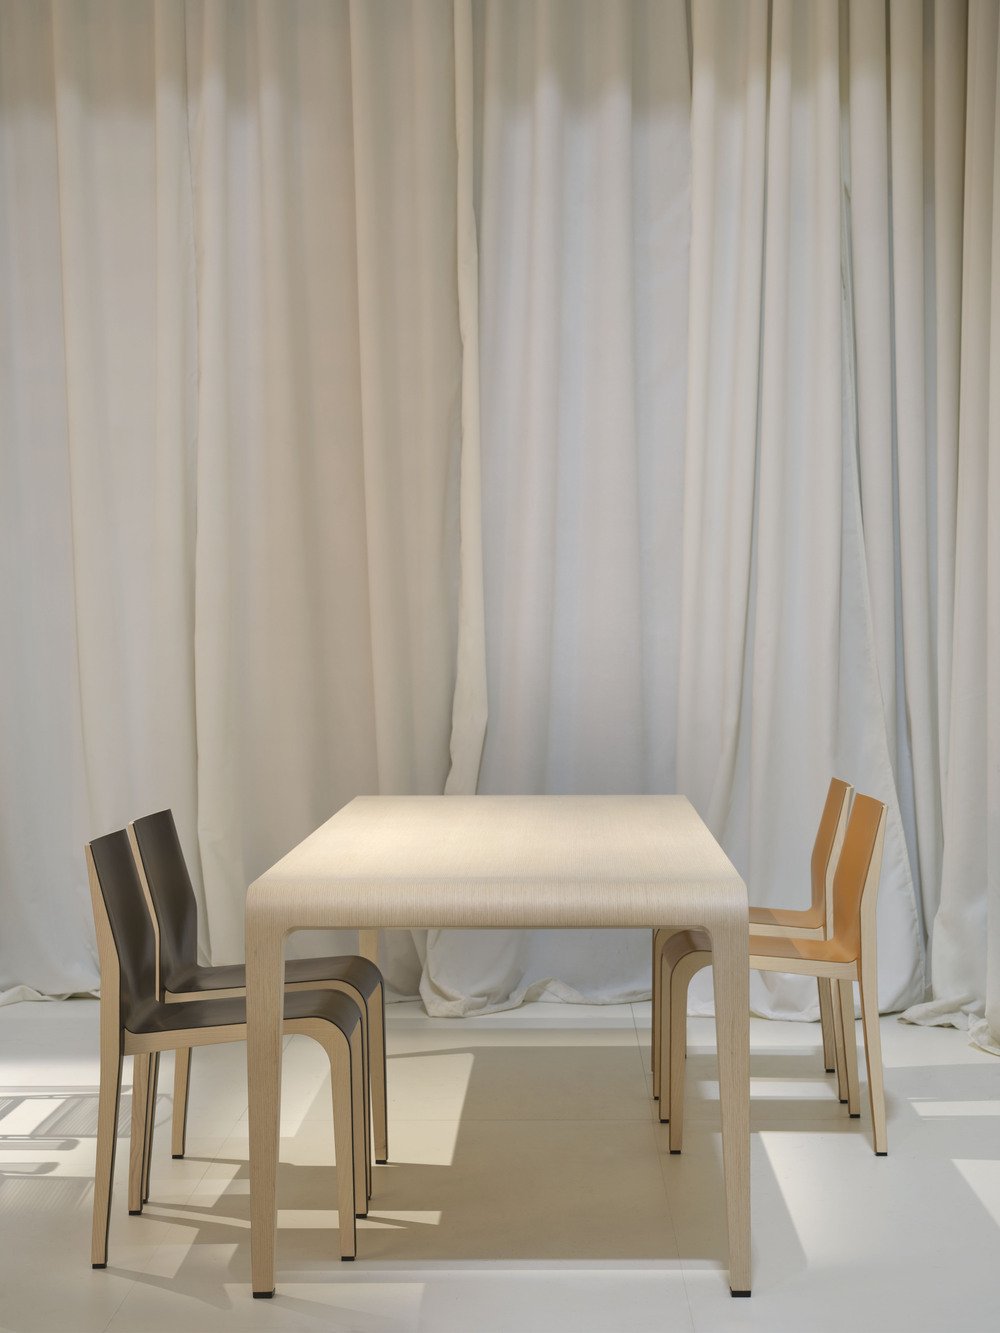 Alias - Salone del Mobile - Table IVOLO et chaise LALEGGERA.jpg